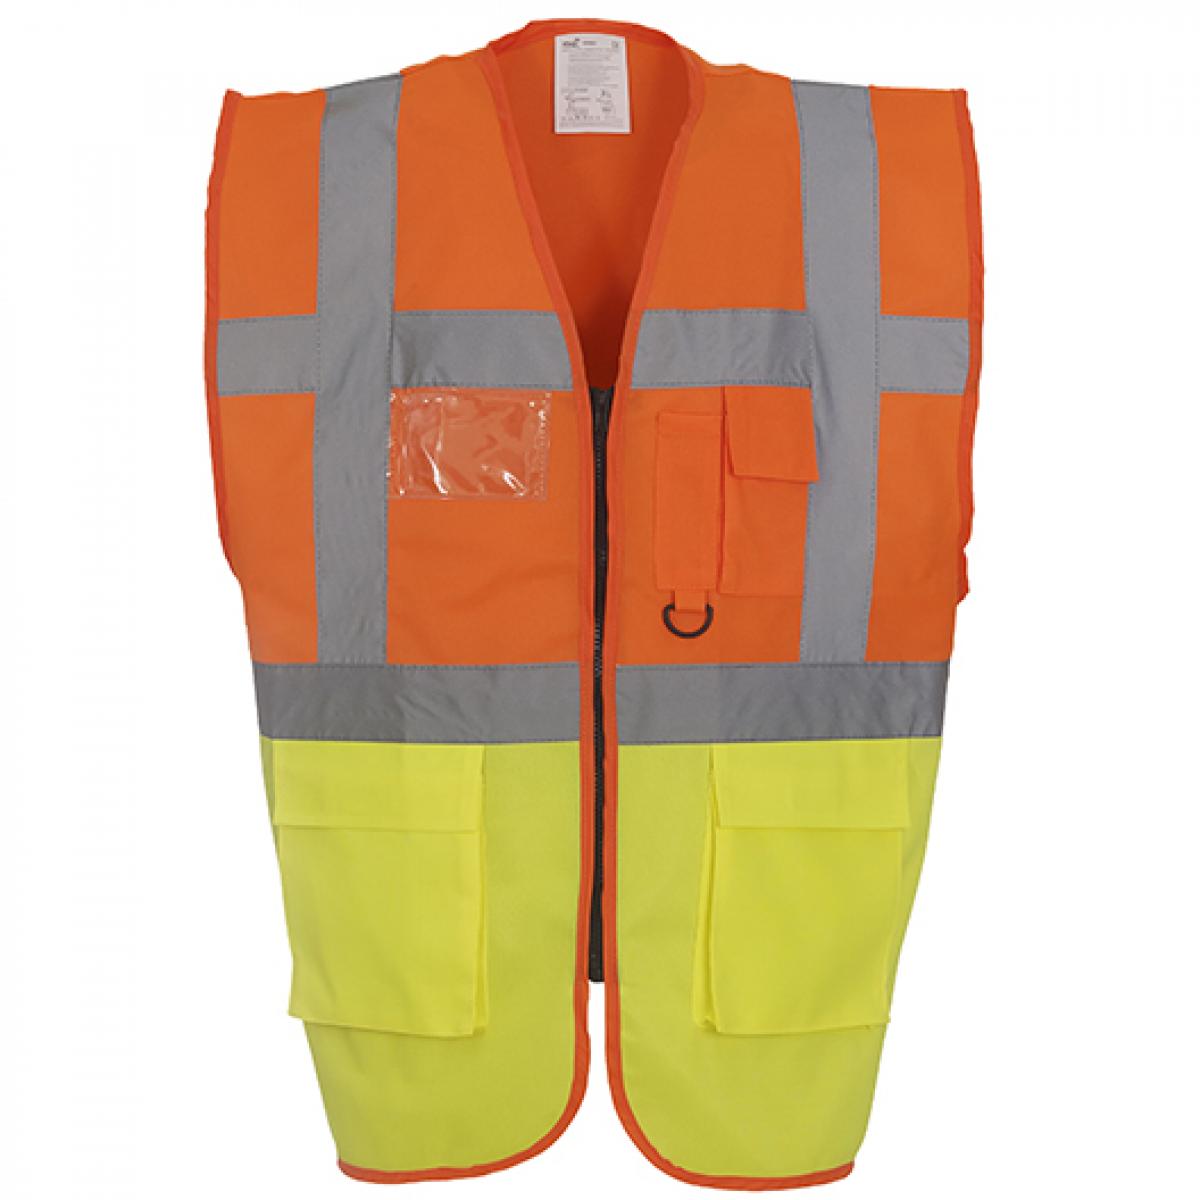 Hersteller: YOKO Herstellernummer: HVW801 Artikelbezeichnung: Herren Multi-Functional Executive Waistcoat Farbe: Hi-Vis Orange/Hi-Vis Yellow